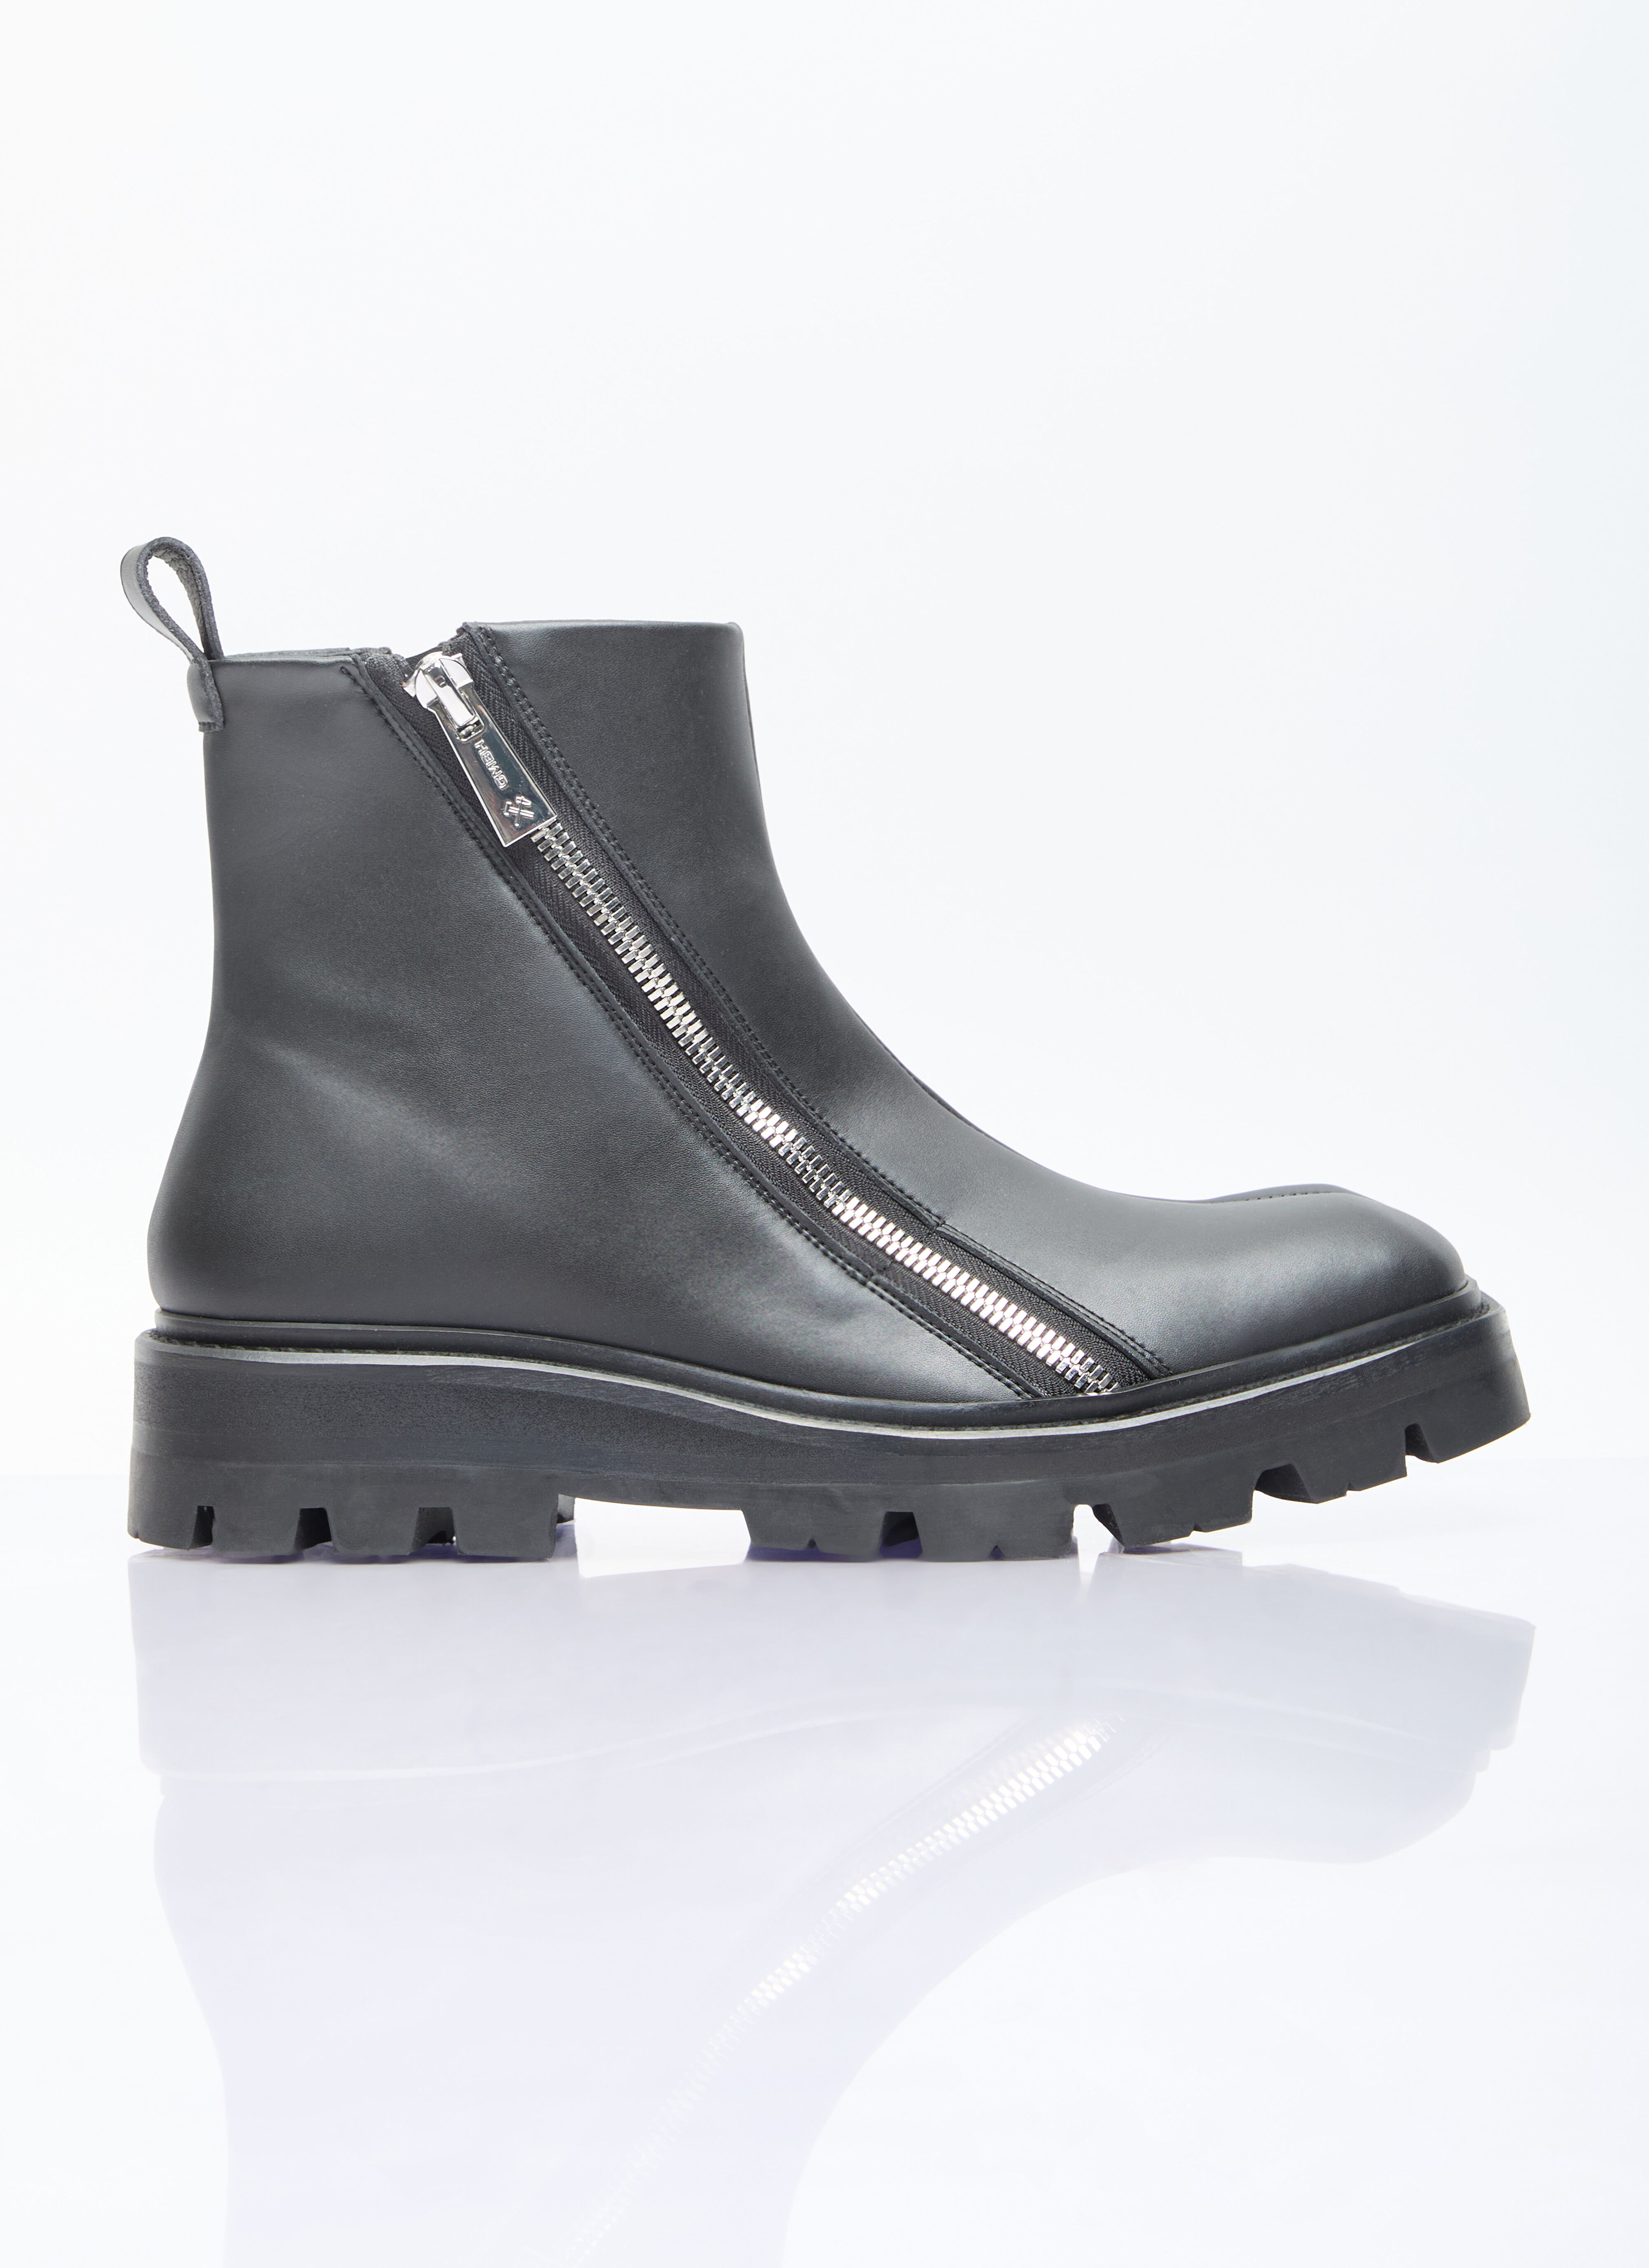 Vivienne Westwood Selim Combat Boots Grey vvw0156010